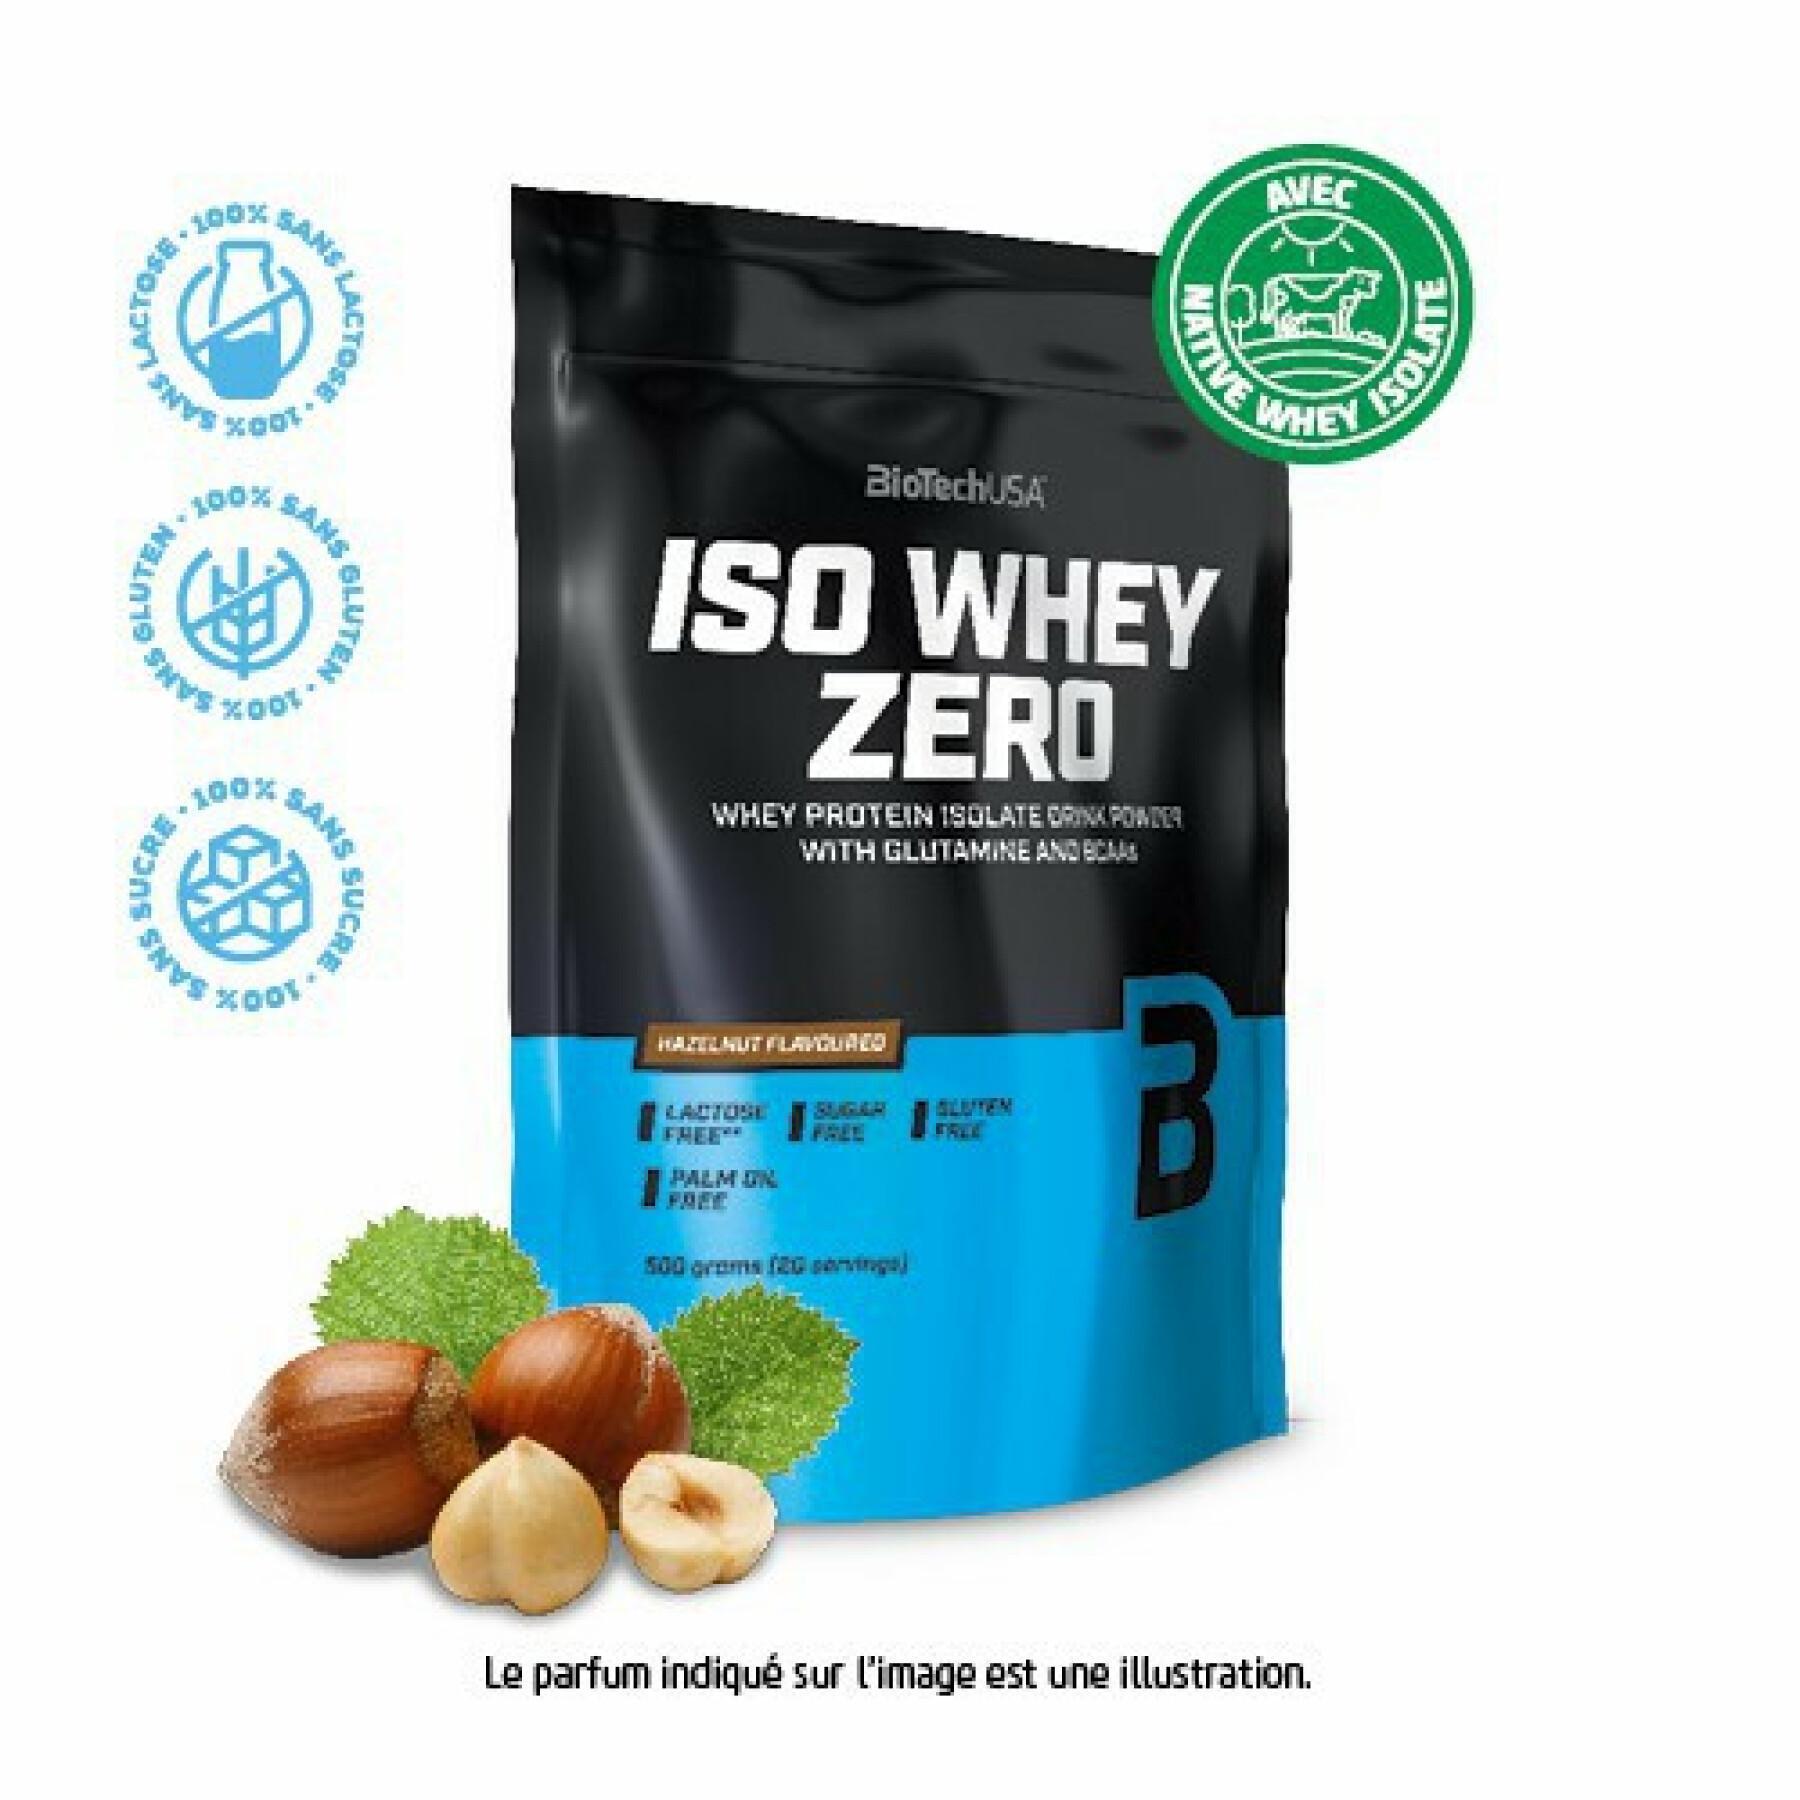 Paquete de 10 bolsas de proteínas Biotech USA iso whey zero lactose free - Noisette - 500g